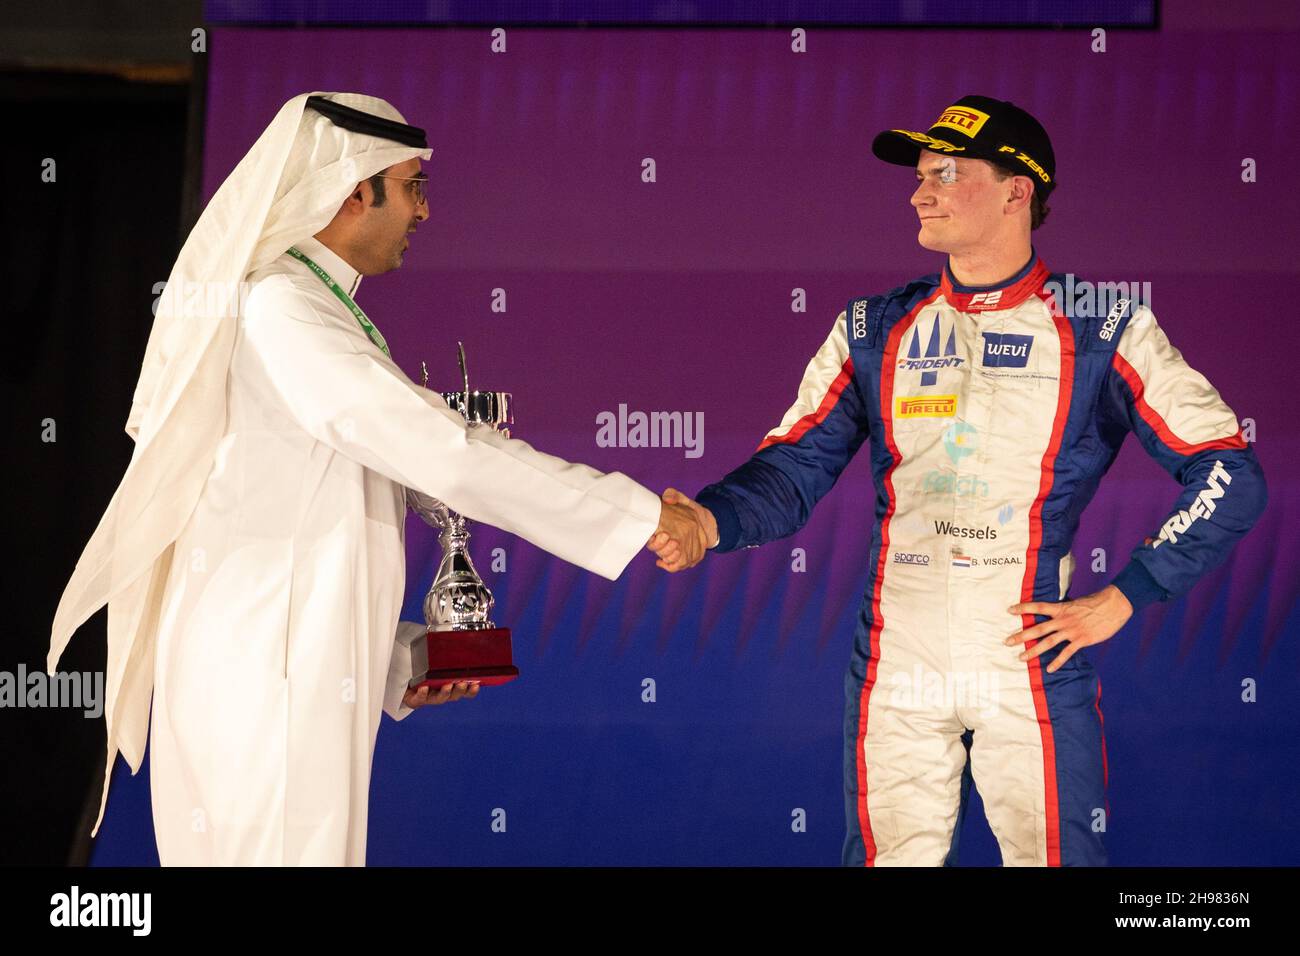 Viscaal Bent (nld), Trident, Dallara F2, ritratto durante il 7° round del Campionato FIA di Formula 2 2021 dal 3 al 5 dicembre 2021 sul circuito di Jeddah Corniche, a Jeddah, Arabia Saudita - Foto: Sebastian Rozendaal/DPPI/LiveMedia Foto Stock